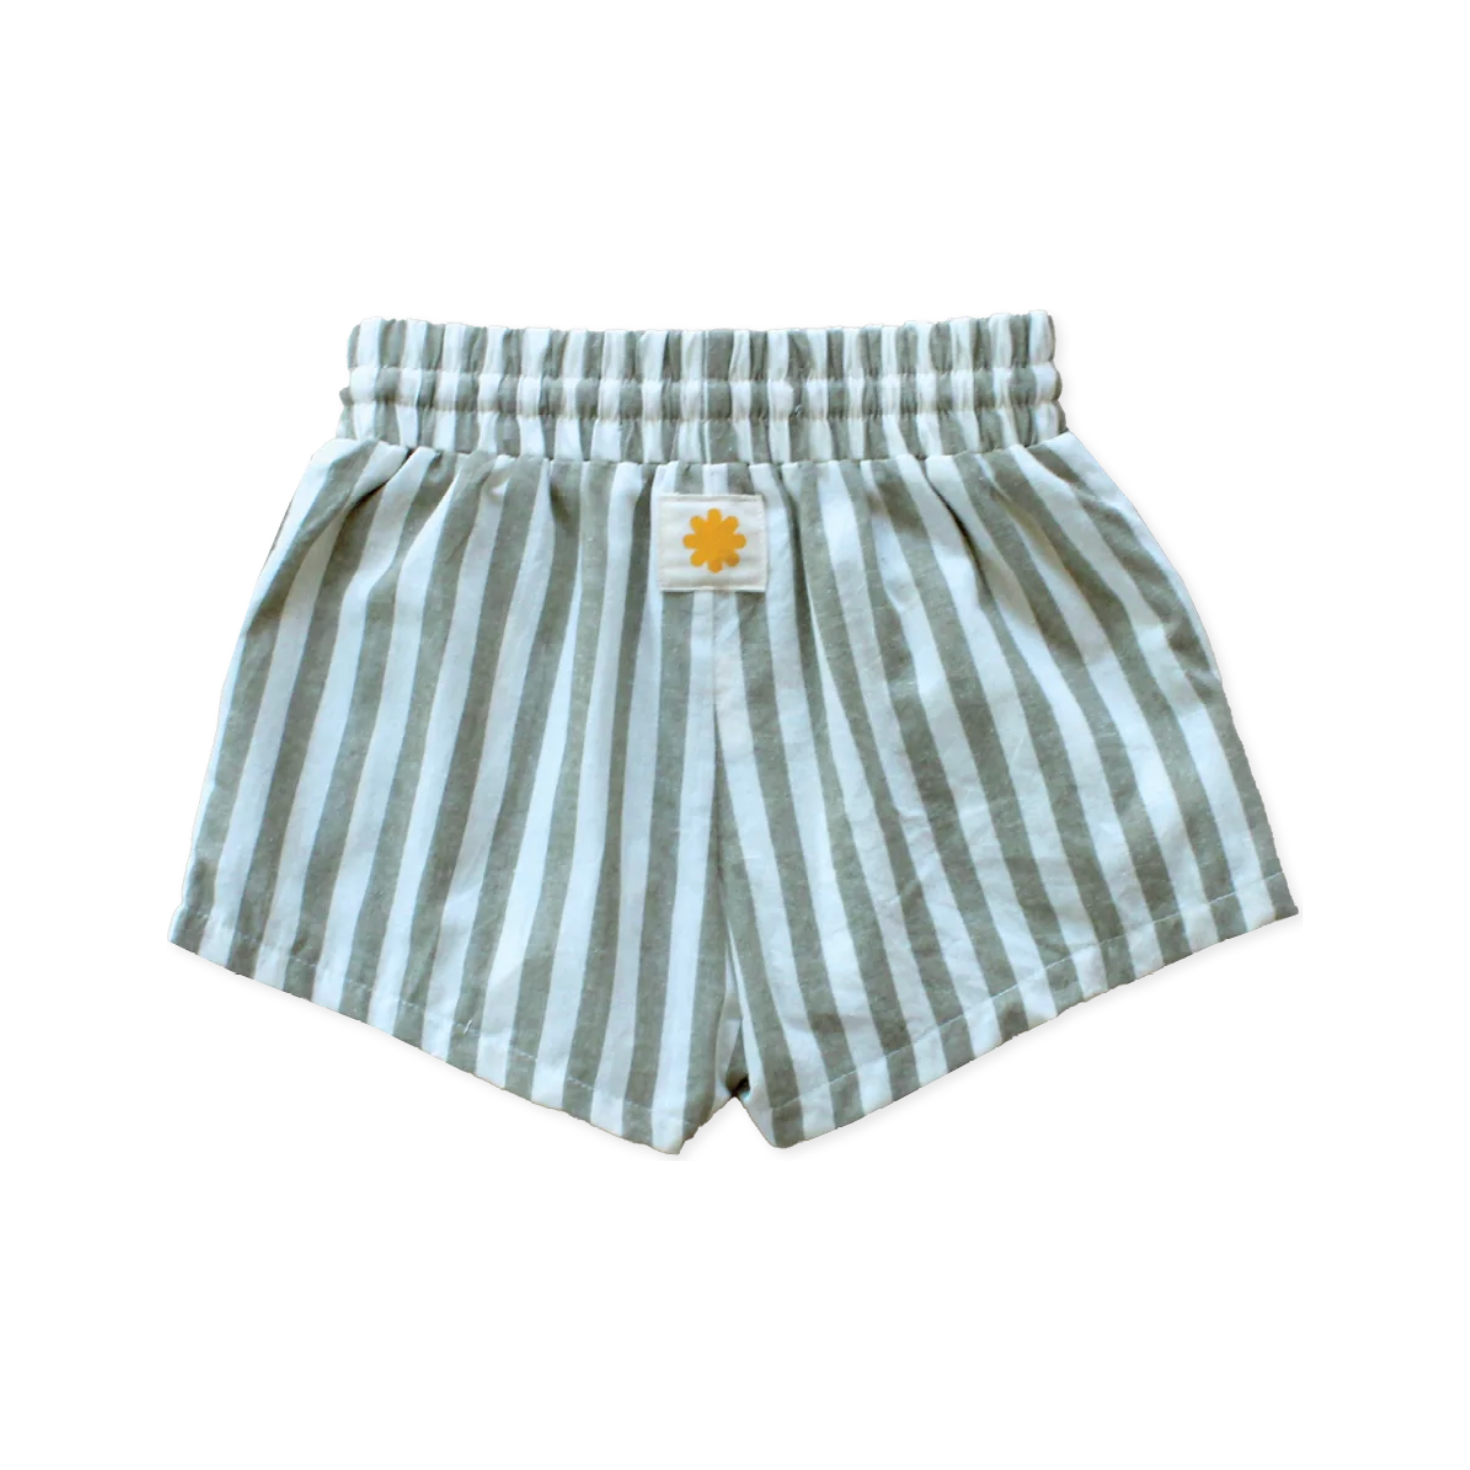 Sonny Label Stripe Shorts - Olive